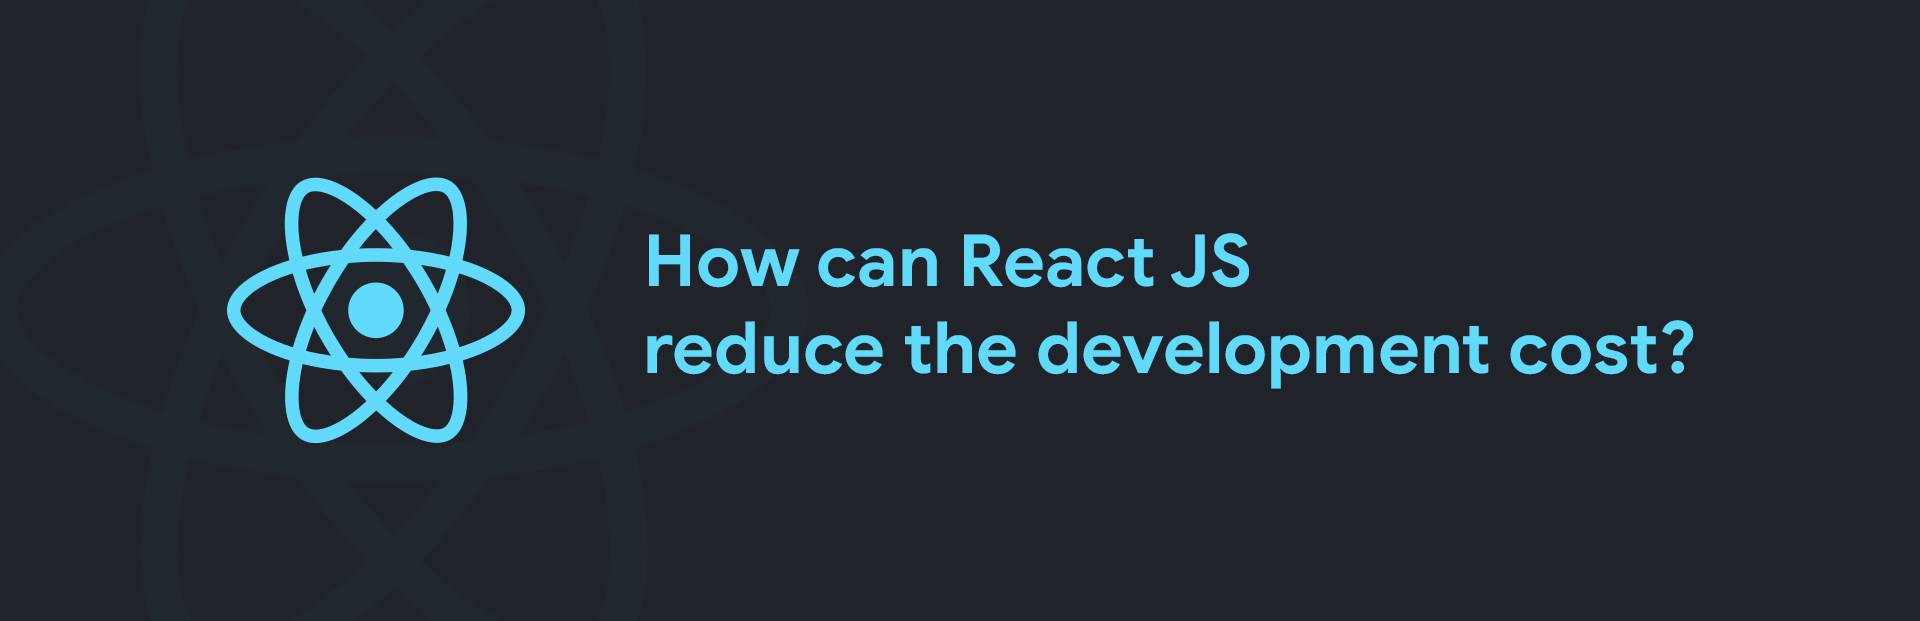 React js development